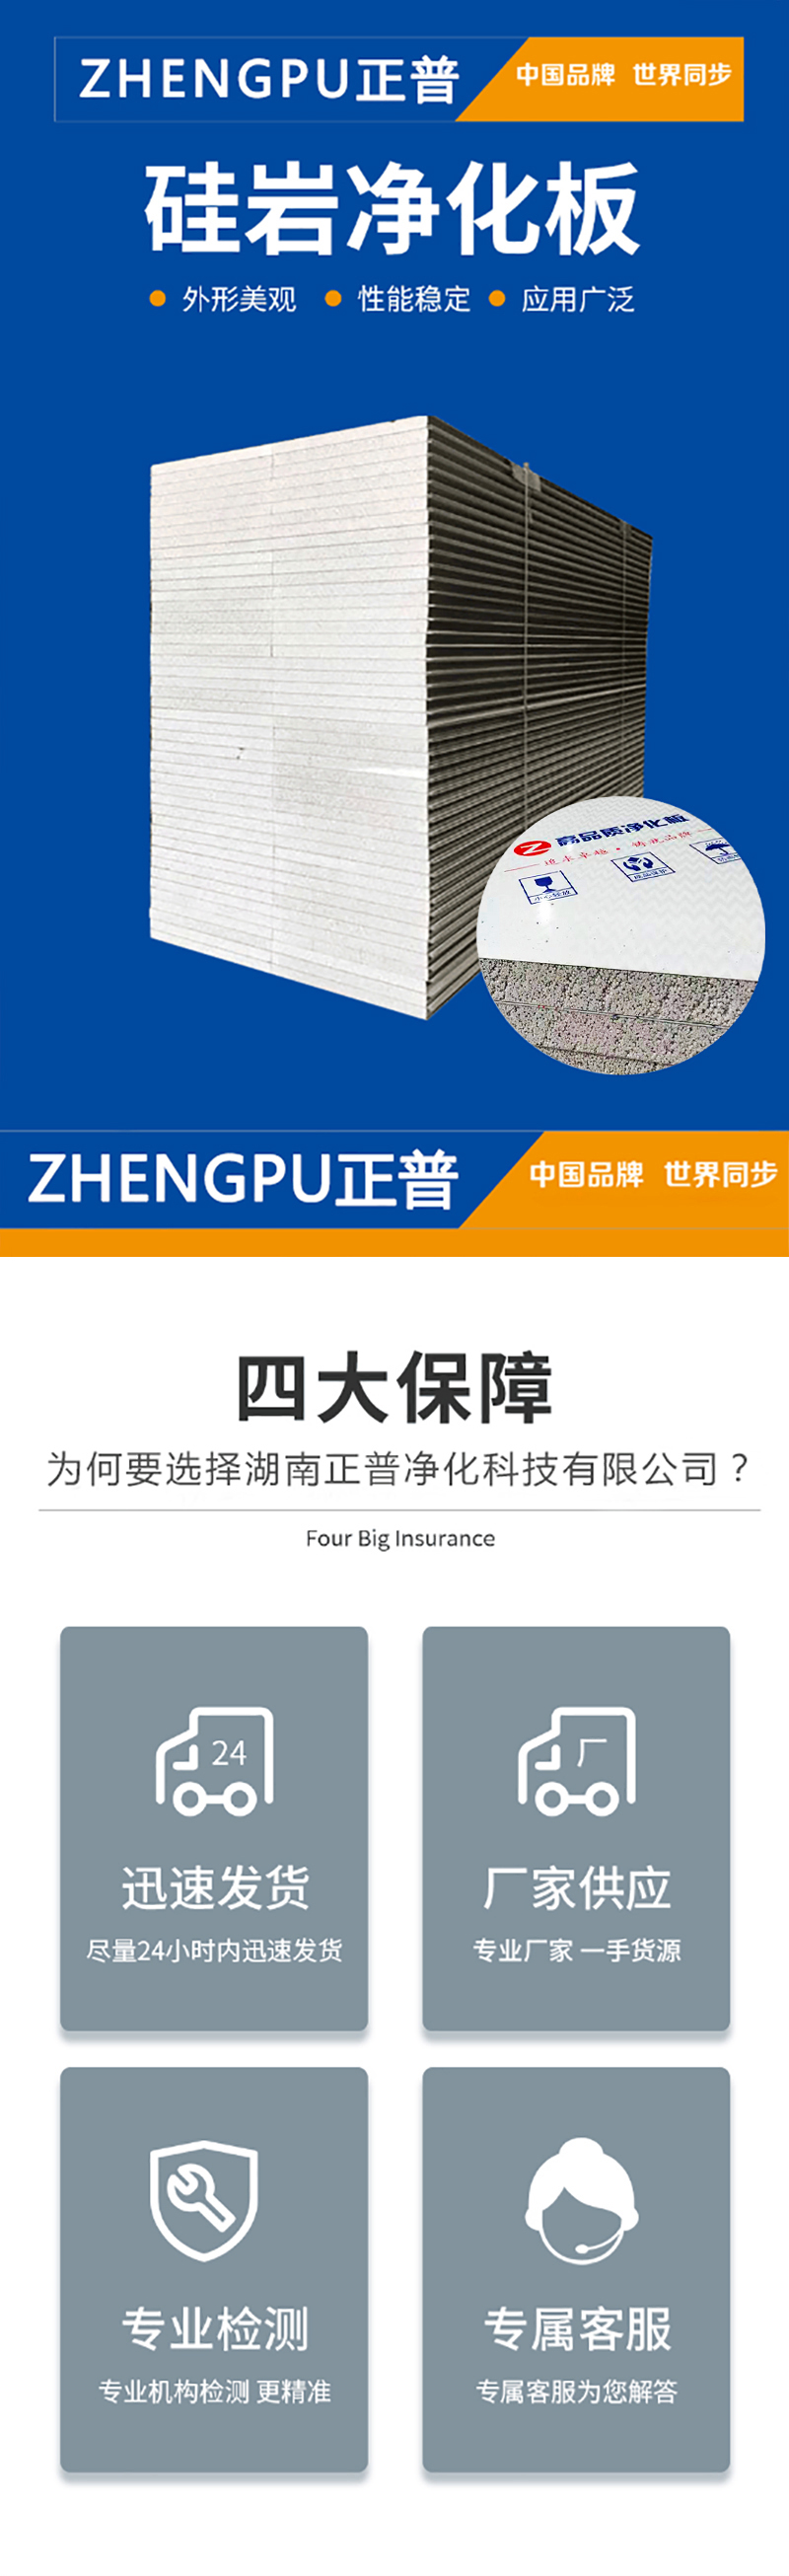 岩棉玻镁夹芯板,米乐app(中国)官方网站板材